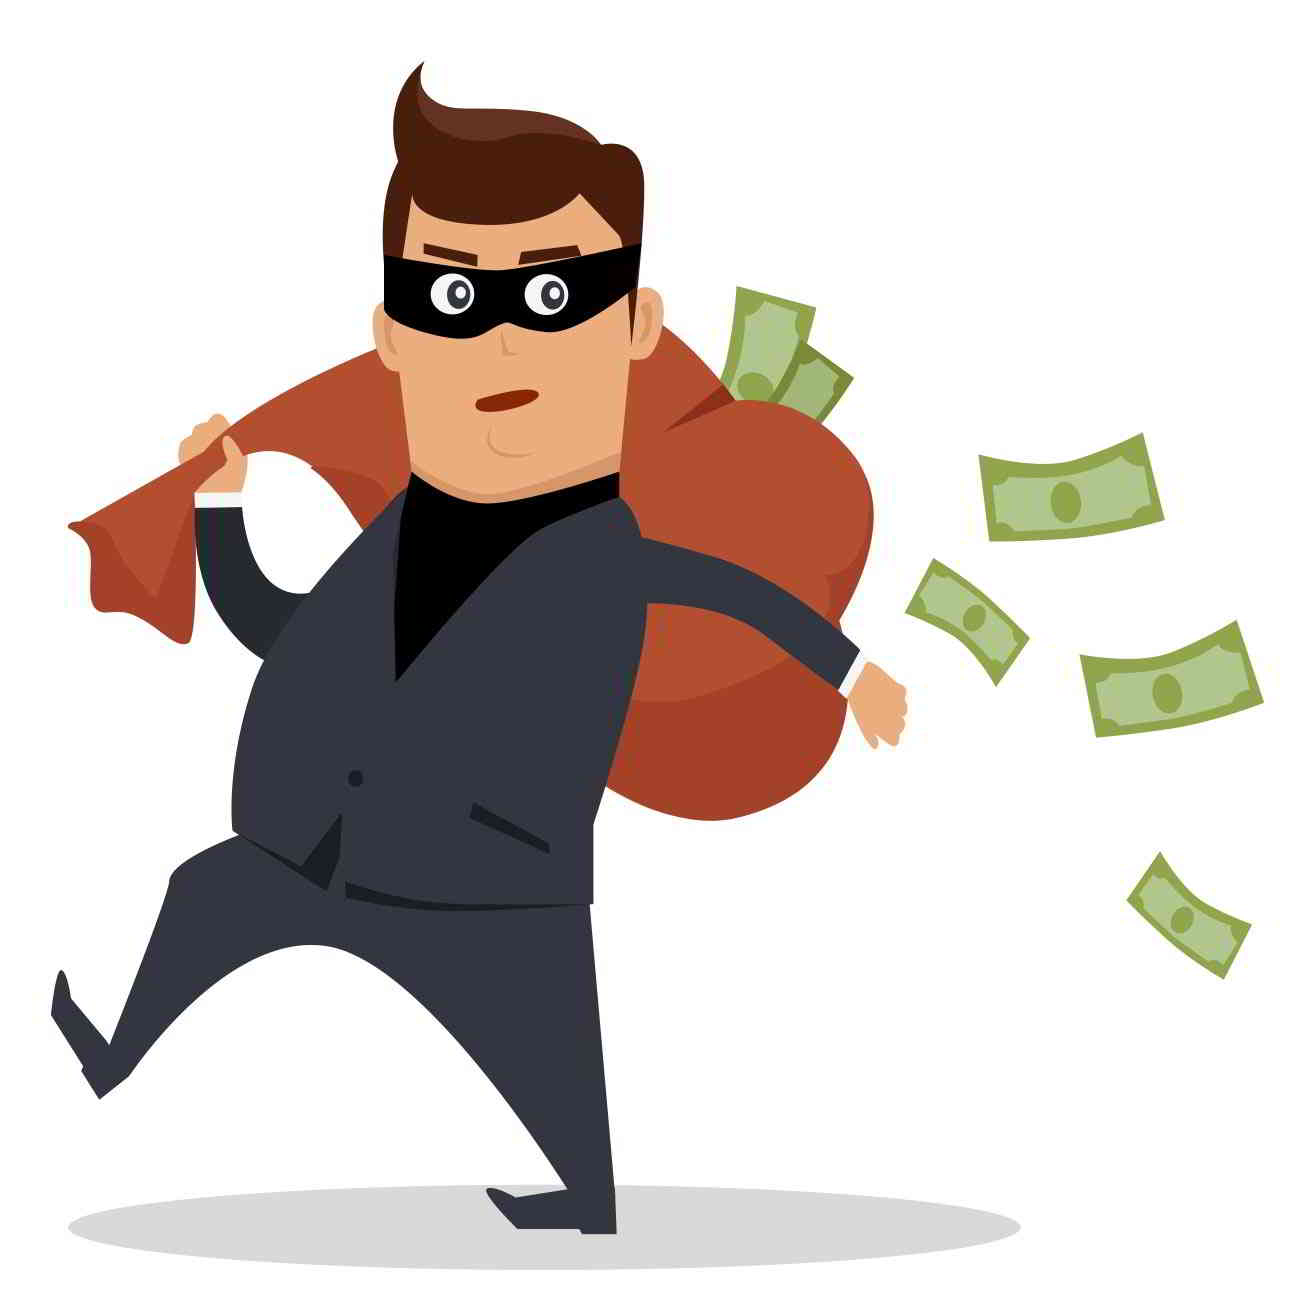 identity thief stealing tax refund